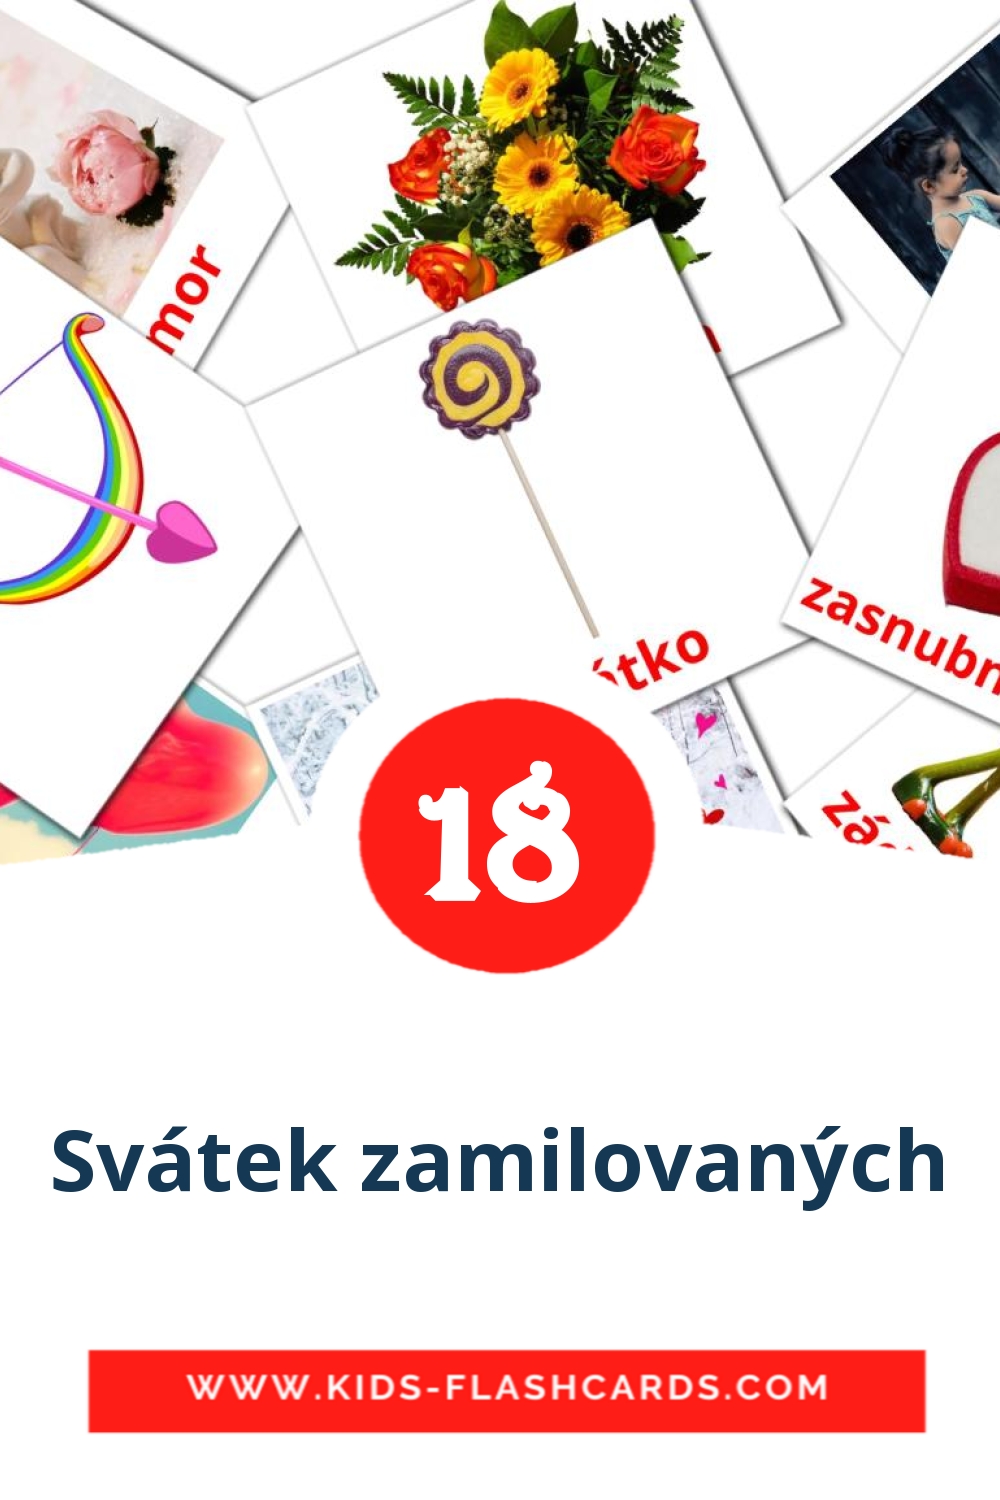 Svátek zamilovaných на чешском для Детского Сада (18 карточек)